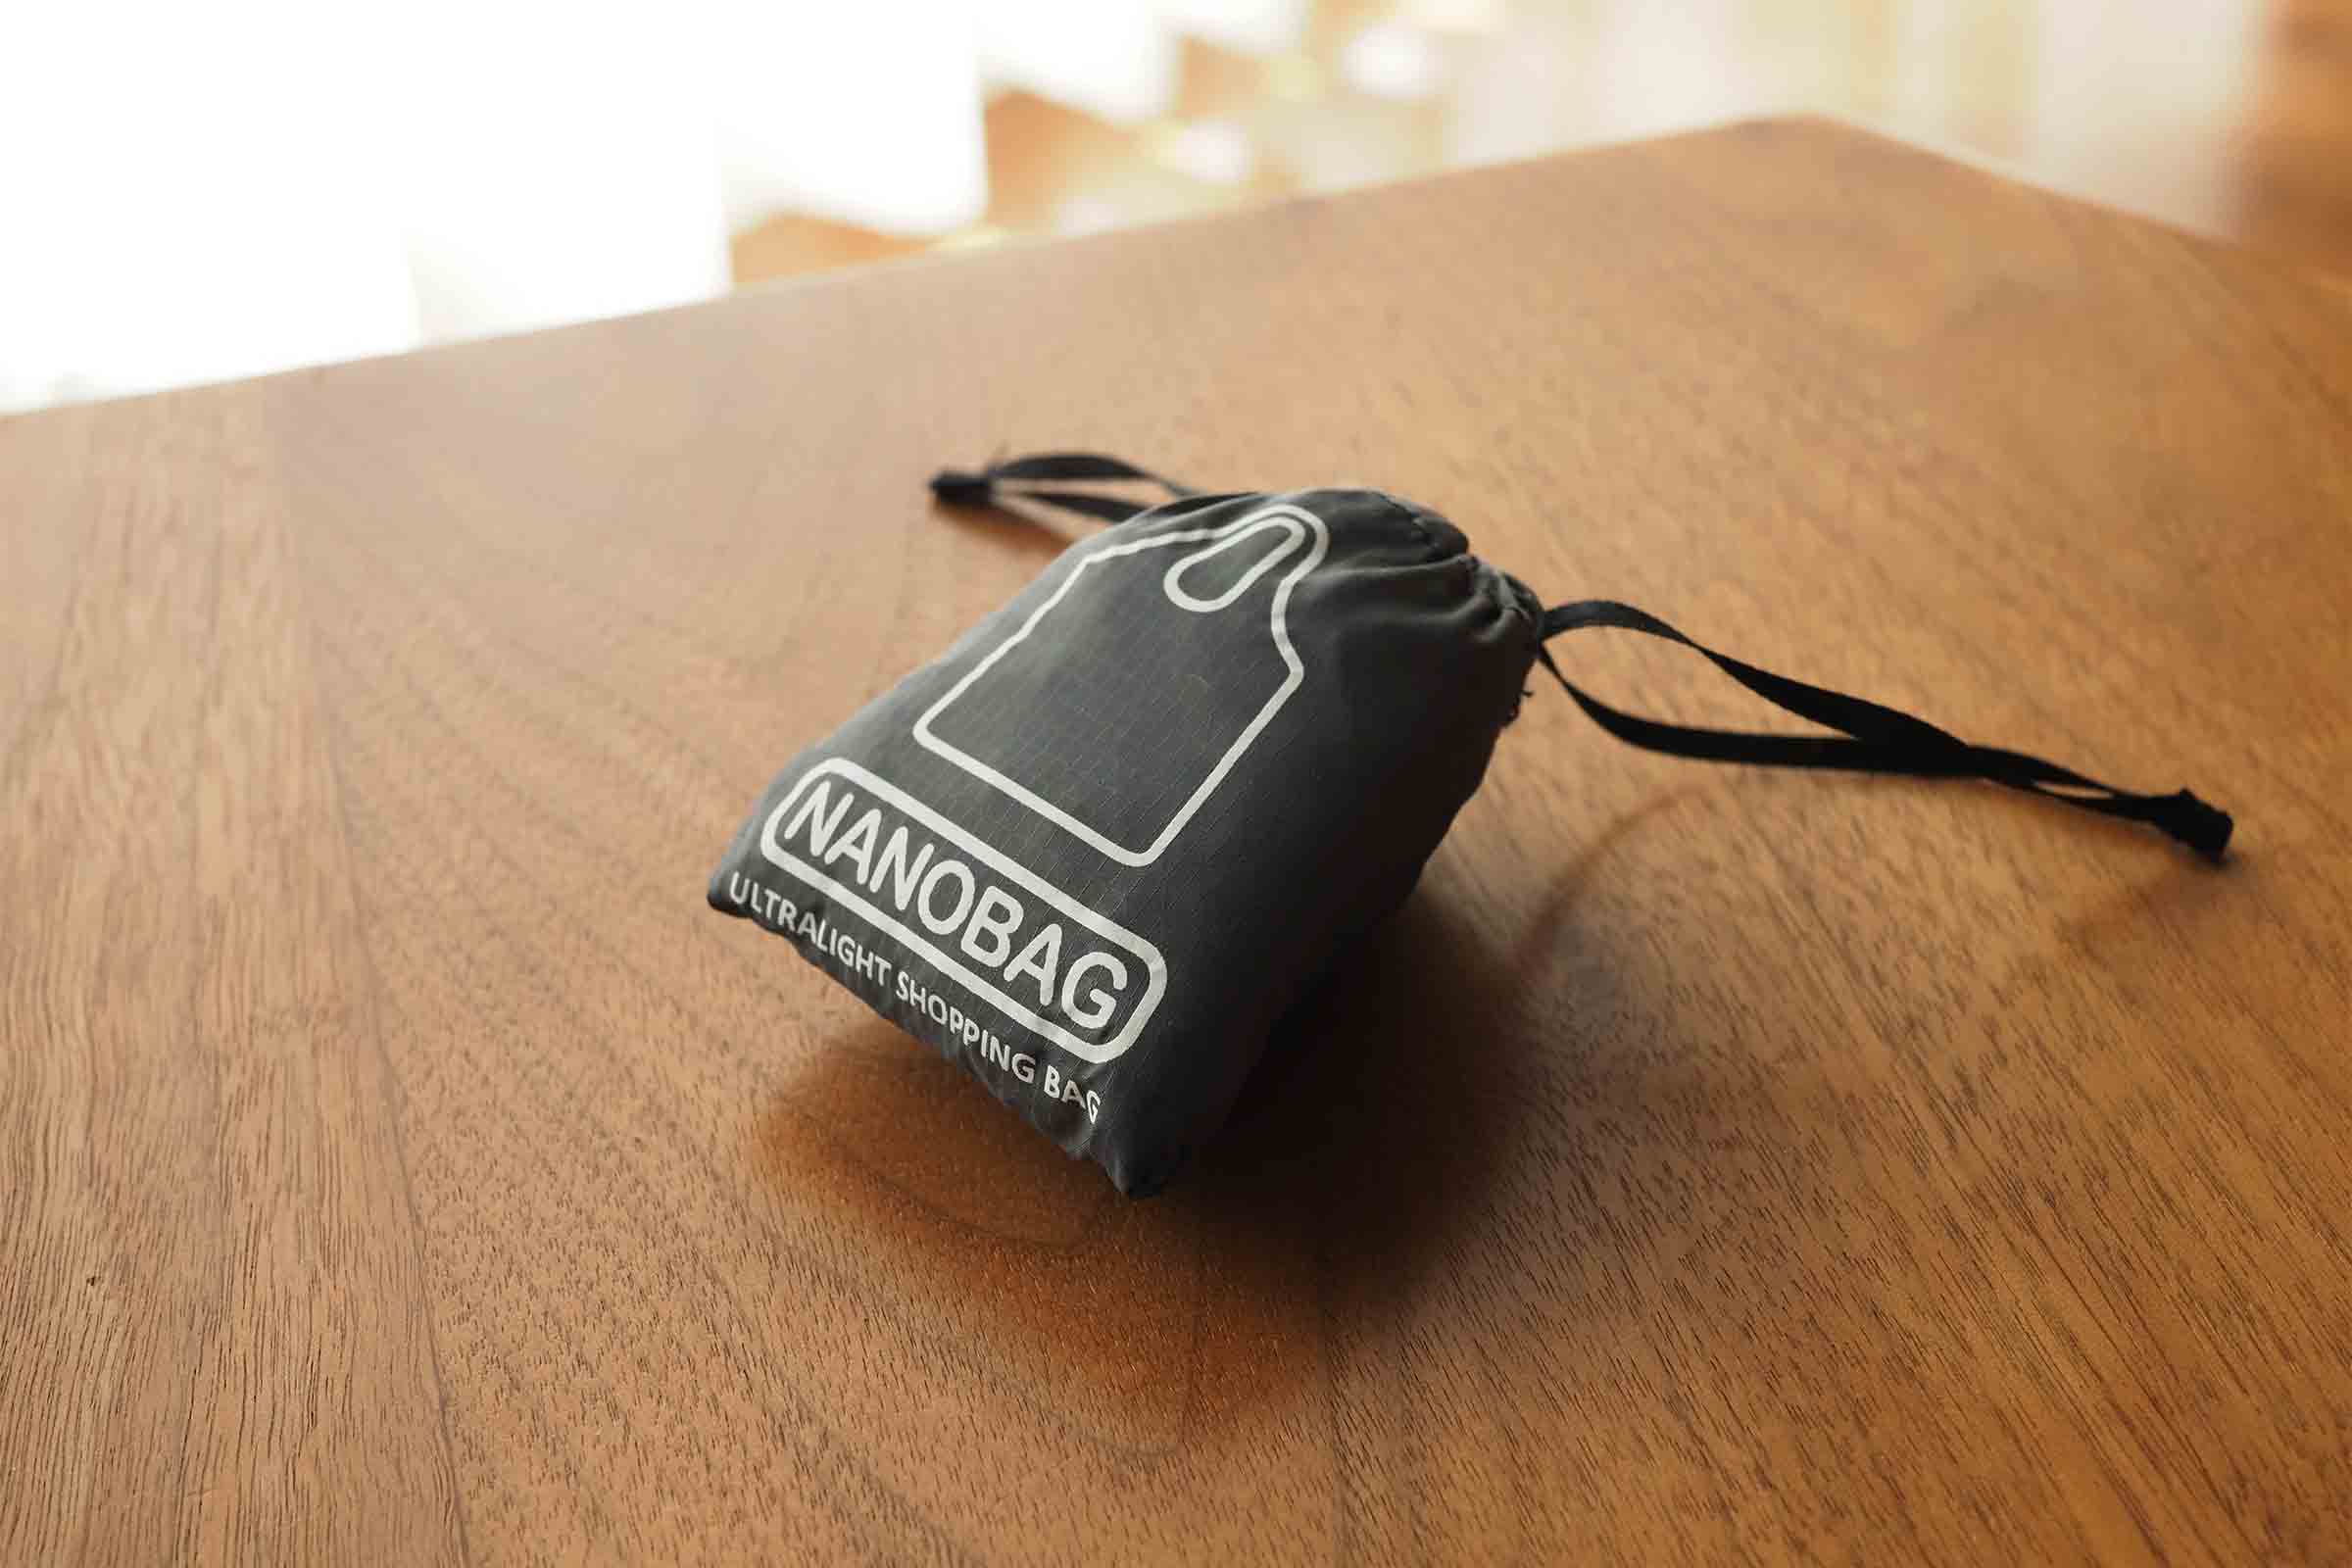 エコバッグ,nano bag,小さい,コンパクト,軽い,お洒落